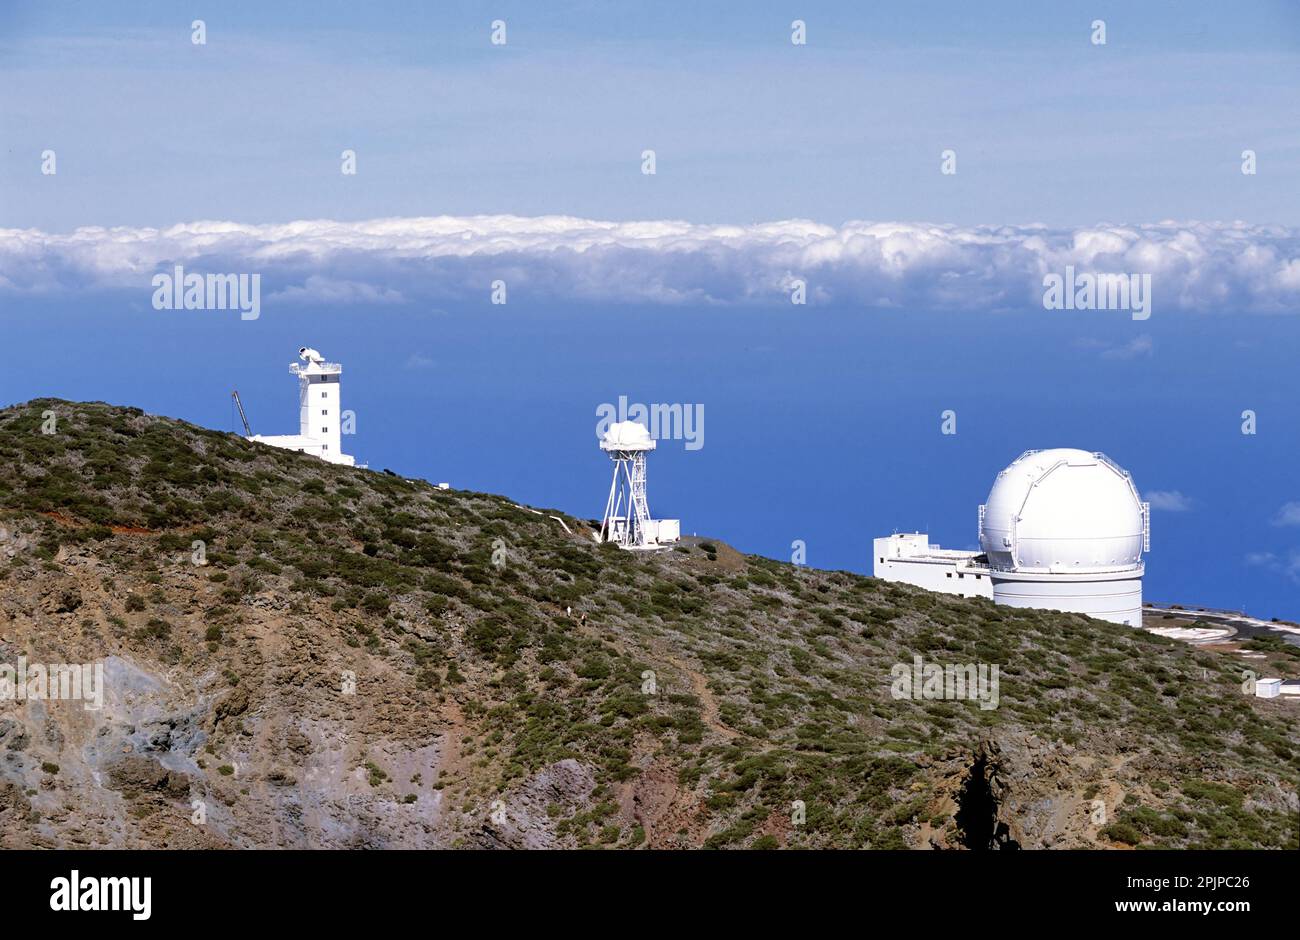 Blick auf das internationale Weltraumobservatorium und die Teleskope auf der Insel La Palma auf dem höchsten Gebirgsmassiv Roque de los muchachos, sonniger Tag, Kanarische Inseln Stockfoto